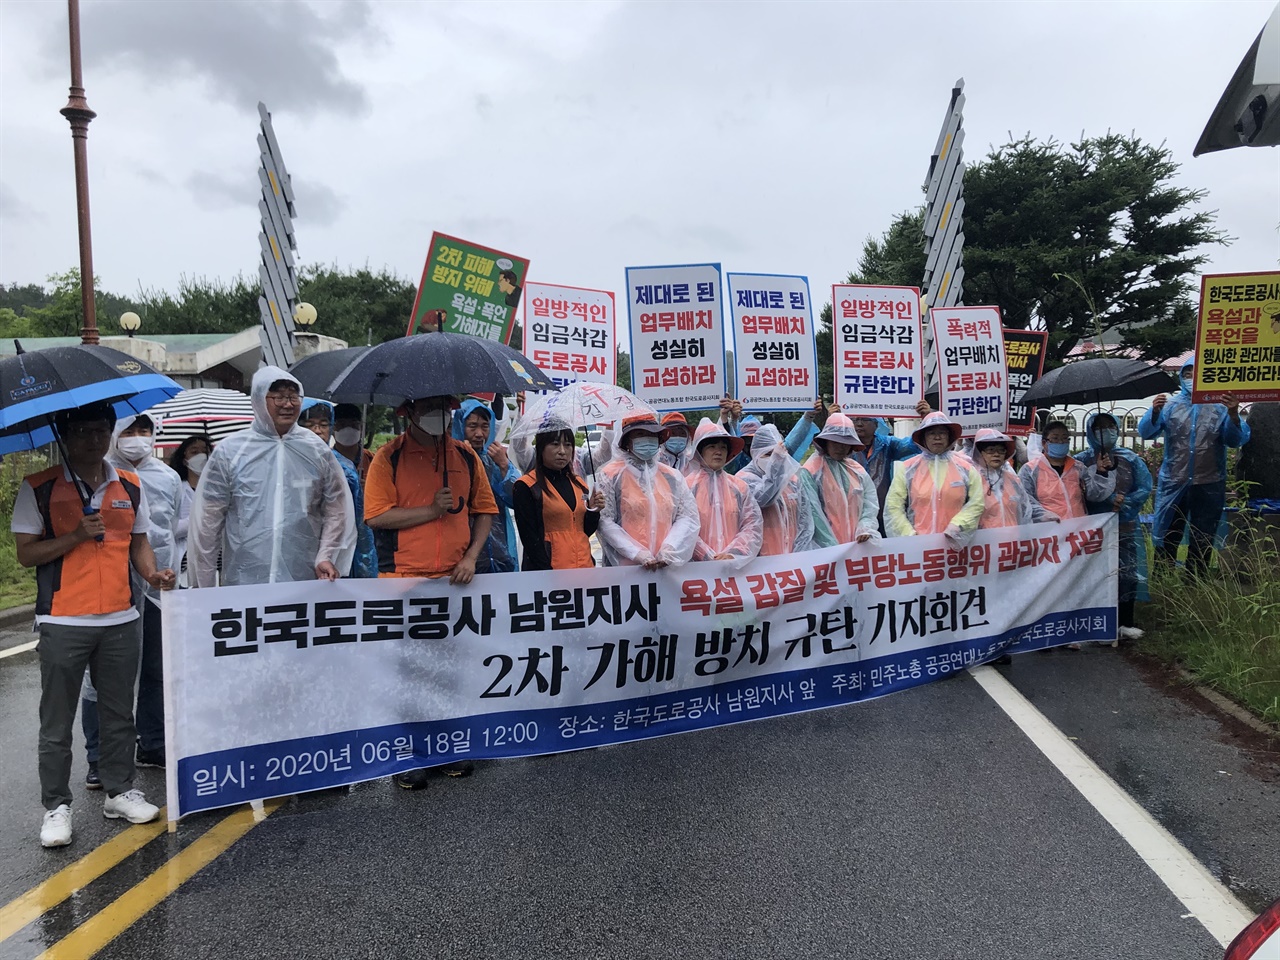 6월18일 한국도로공사 남원지사에서 발생한 부당노동행위에 대해 노조원들이 항의하고 있다.